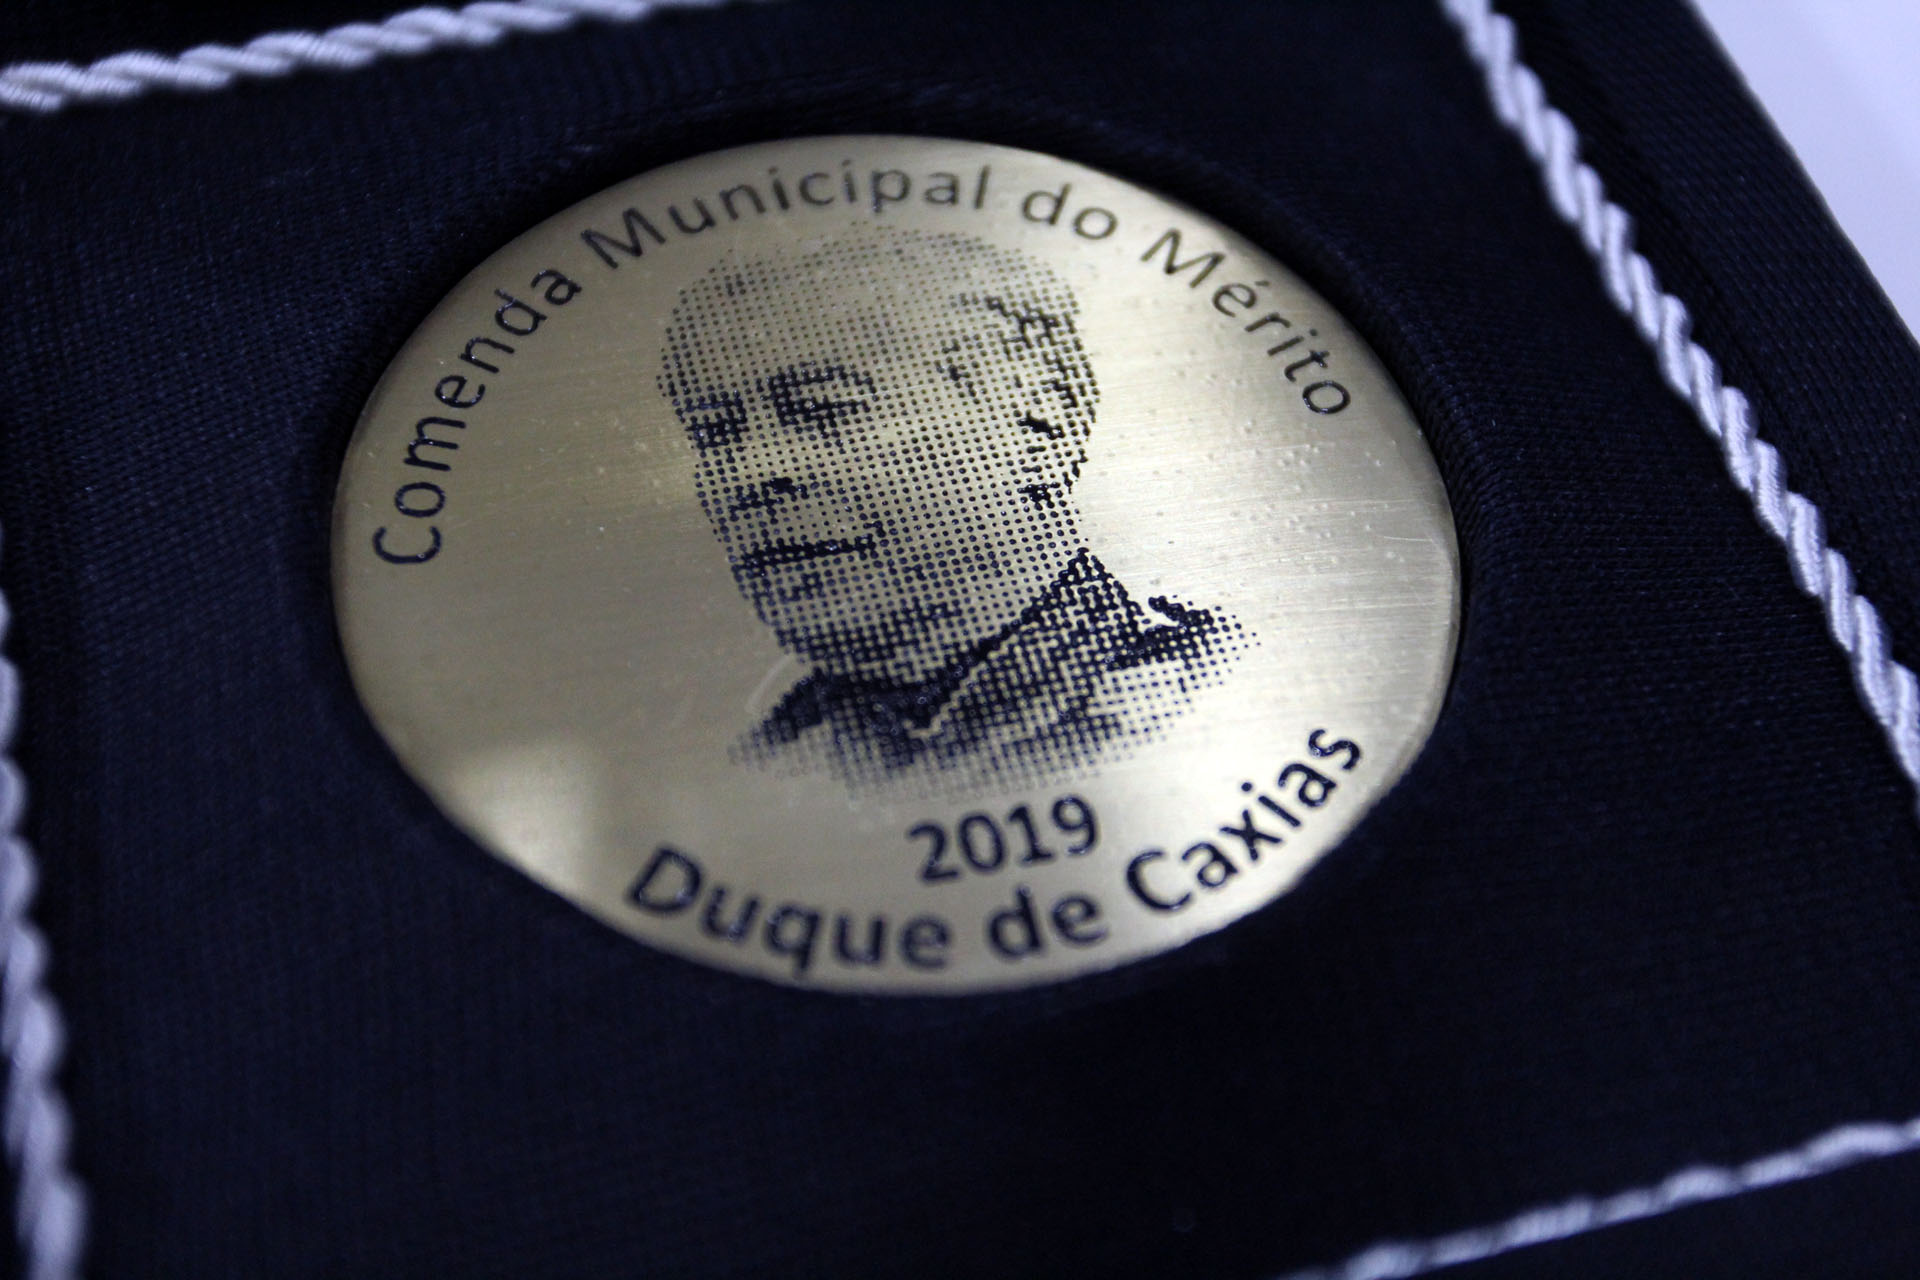 Legislativo homenageia quatro profissionais da área de segurança pública com a Comenda Municipal do Mérito Duque de Caxias